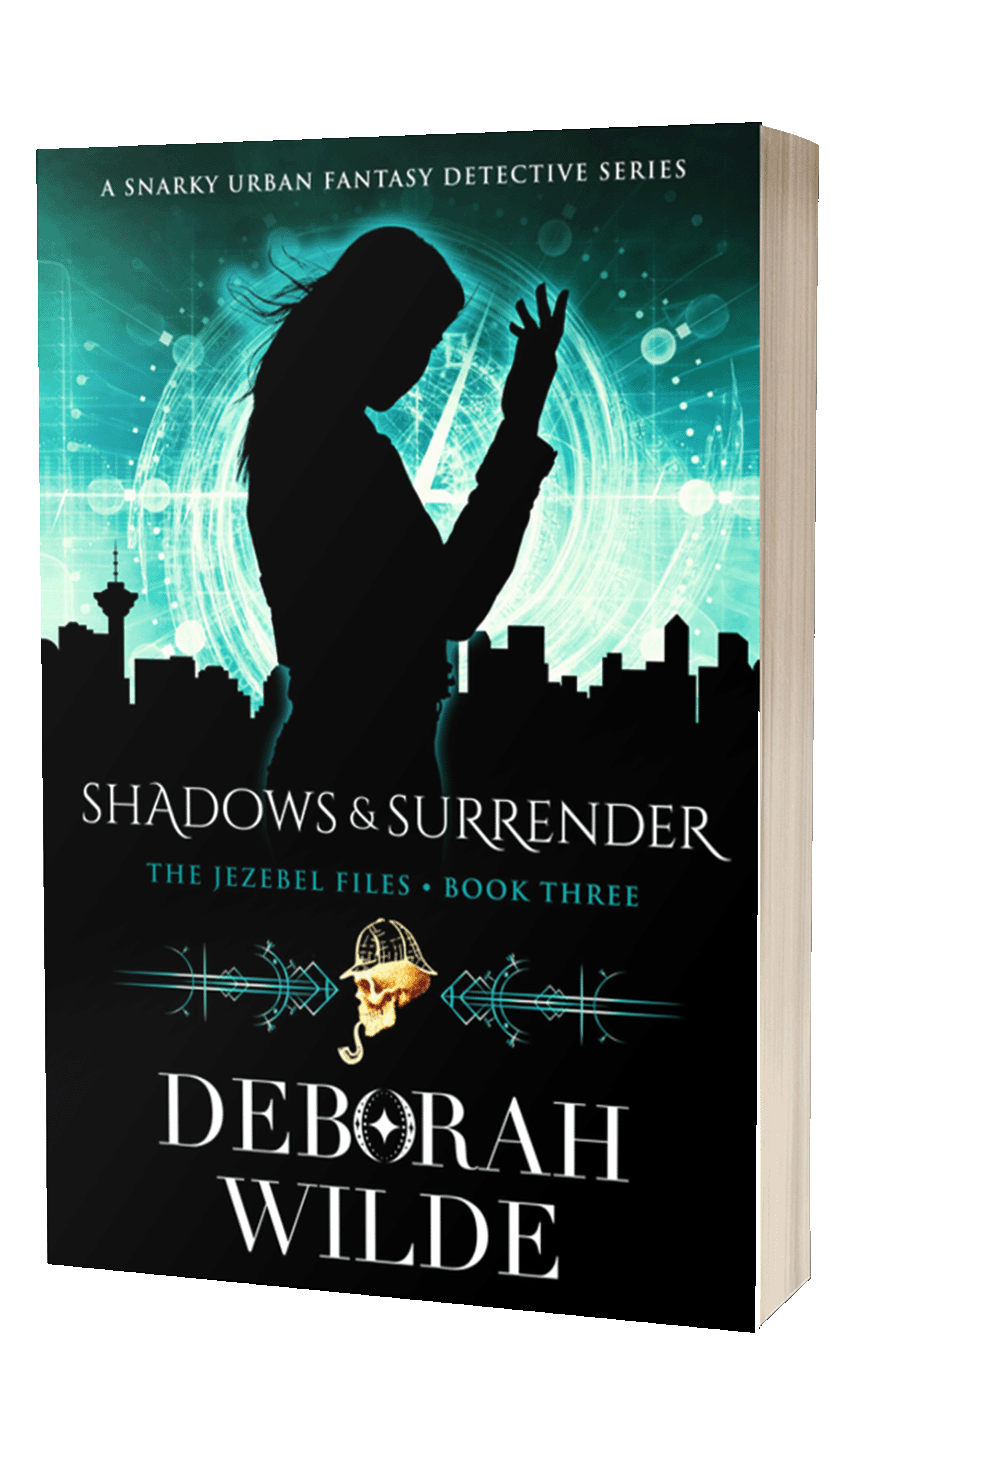 Shadows & Surrender, a funny, sexy, urban fantasy detective series by Deborah Wilde.